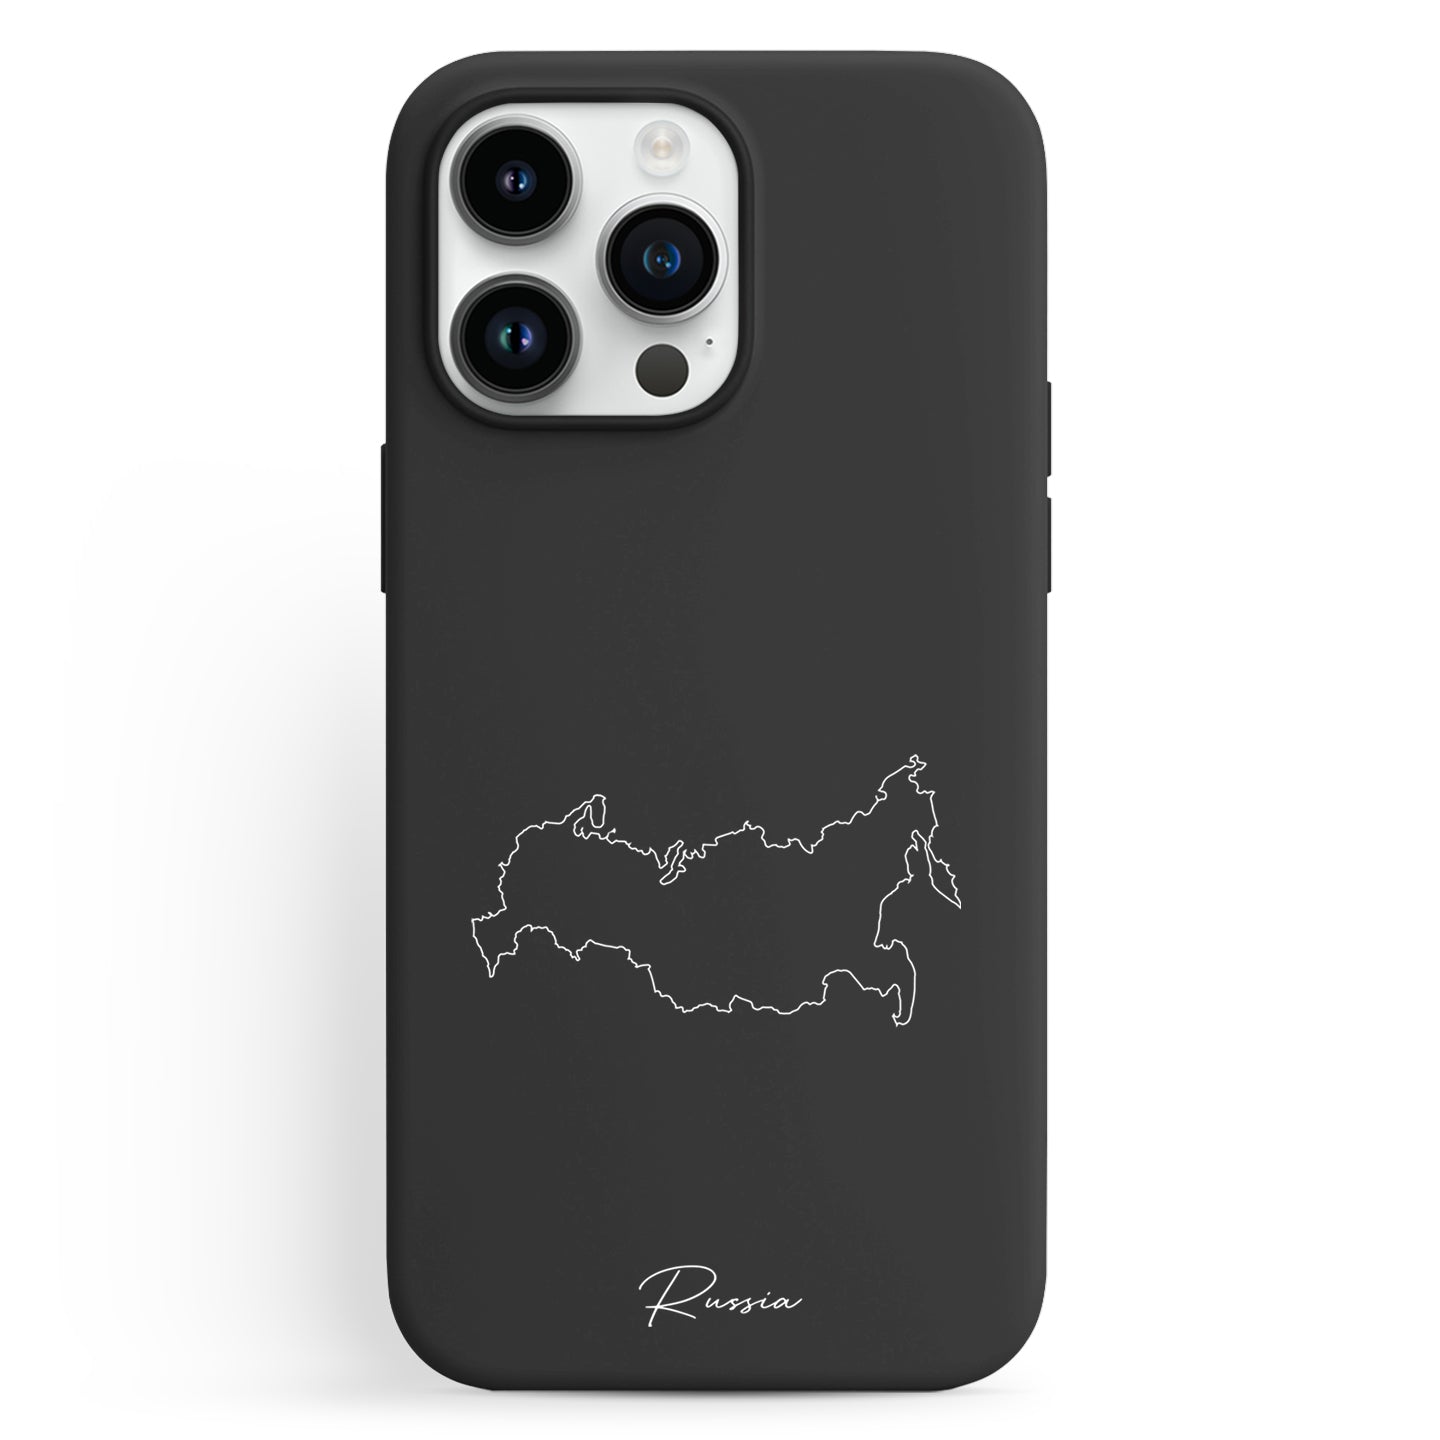 Handyhüllen mit Landkarte - Russland - 1instaphone